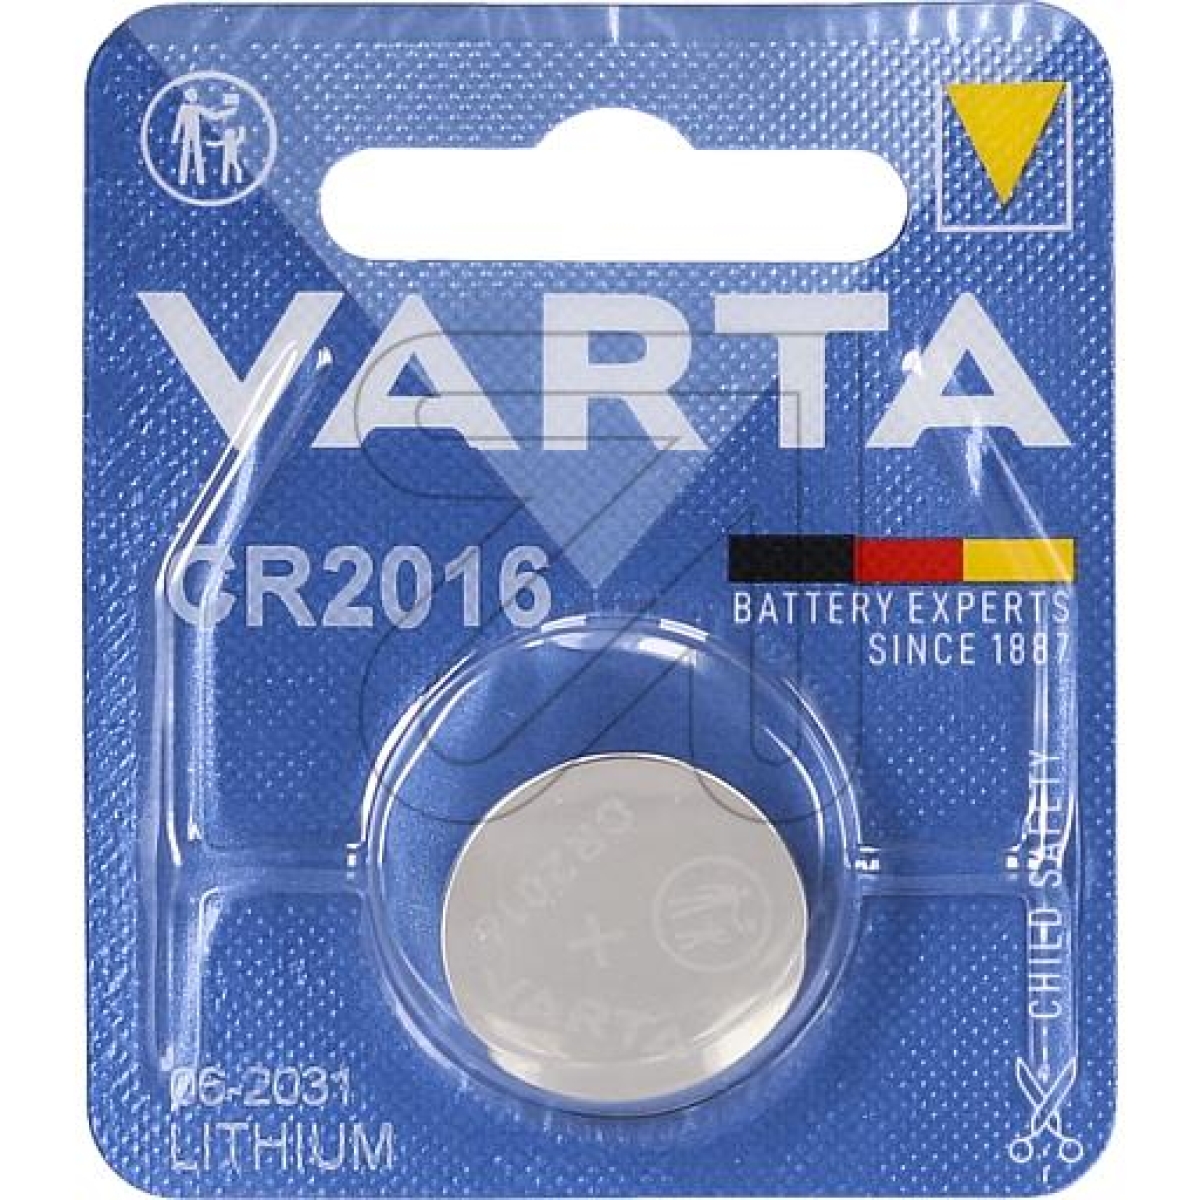 VARTALithium-Zelle Varta CR 2016Artikel-Nr: 376960